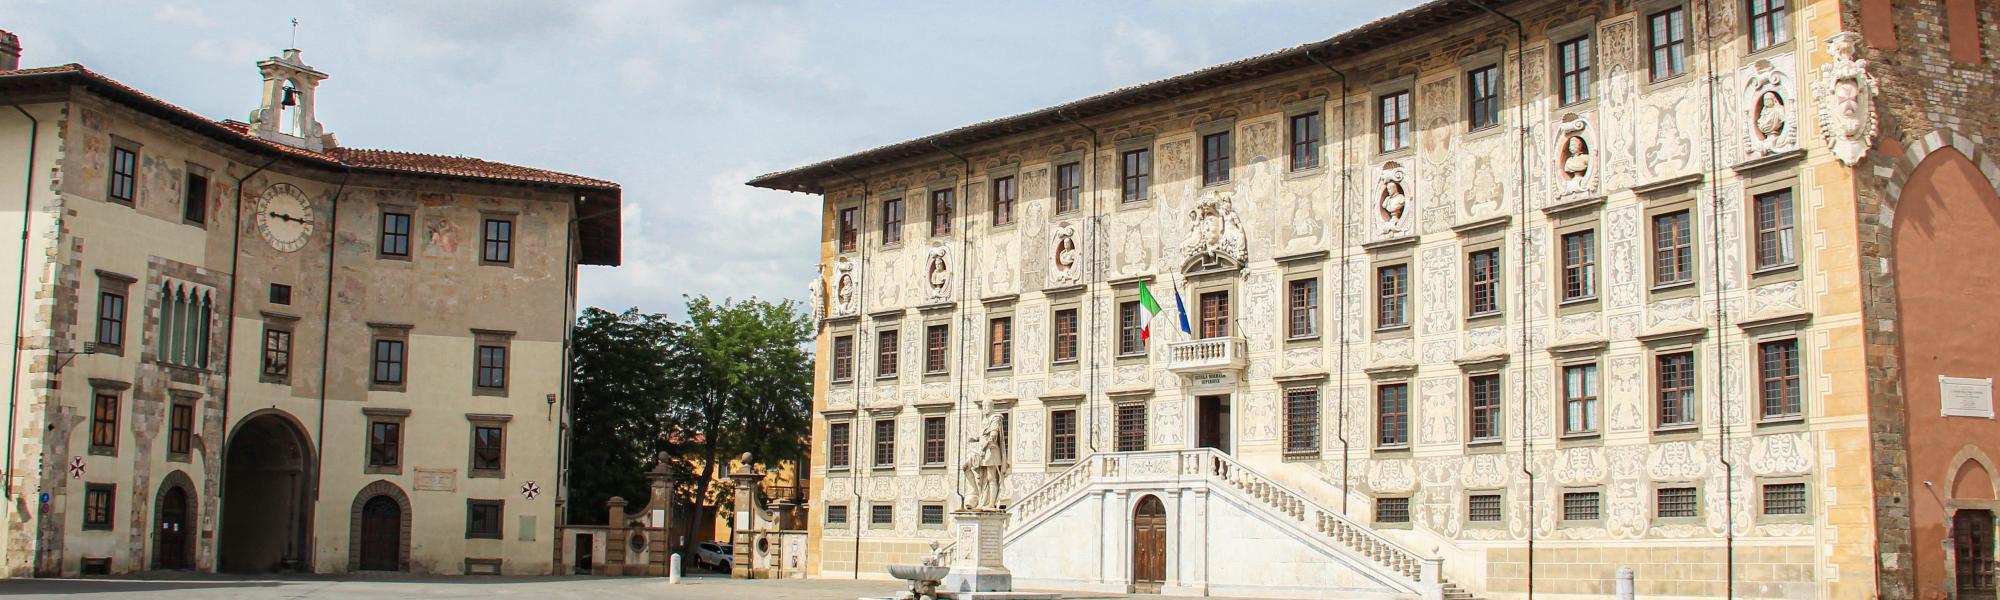 Piazza dei Cavalieri (G. Bettini, Comune di Pisa)